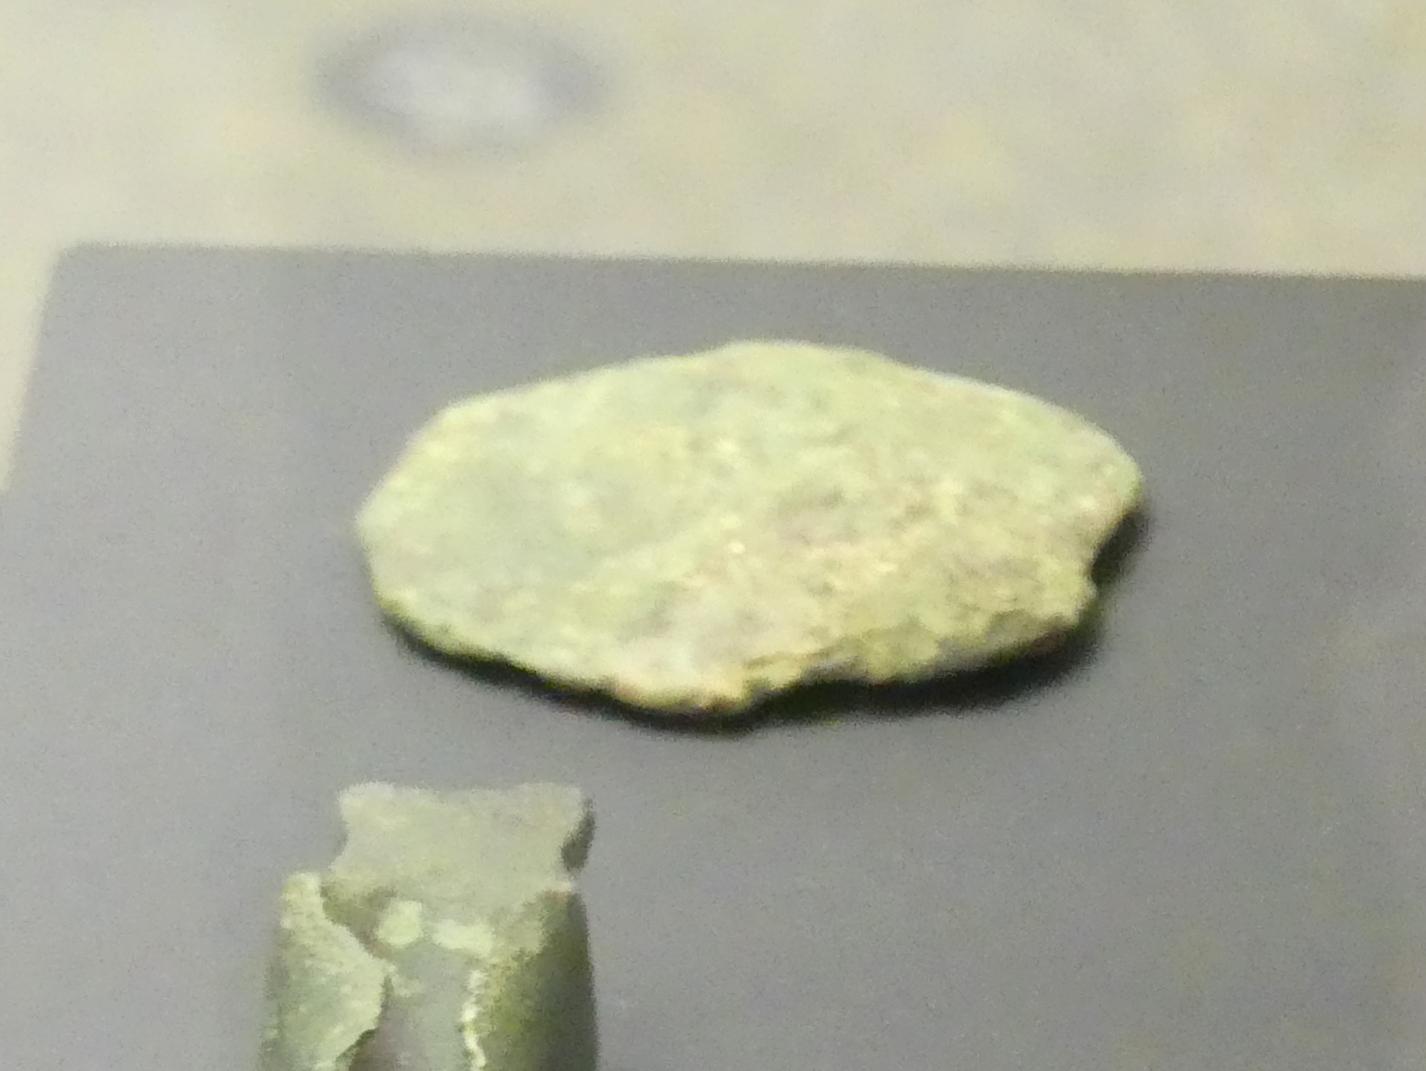 Gußfladen, Urnenfelderzeit, 1400 - 700 v. Chr., 900 - 700 v. Chr., Bild 1/2